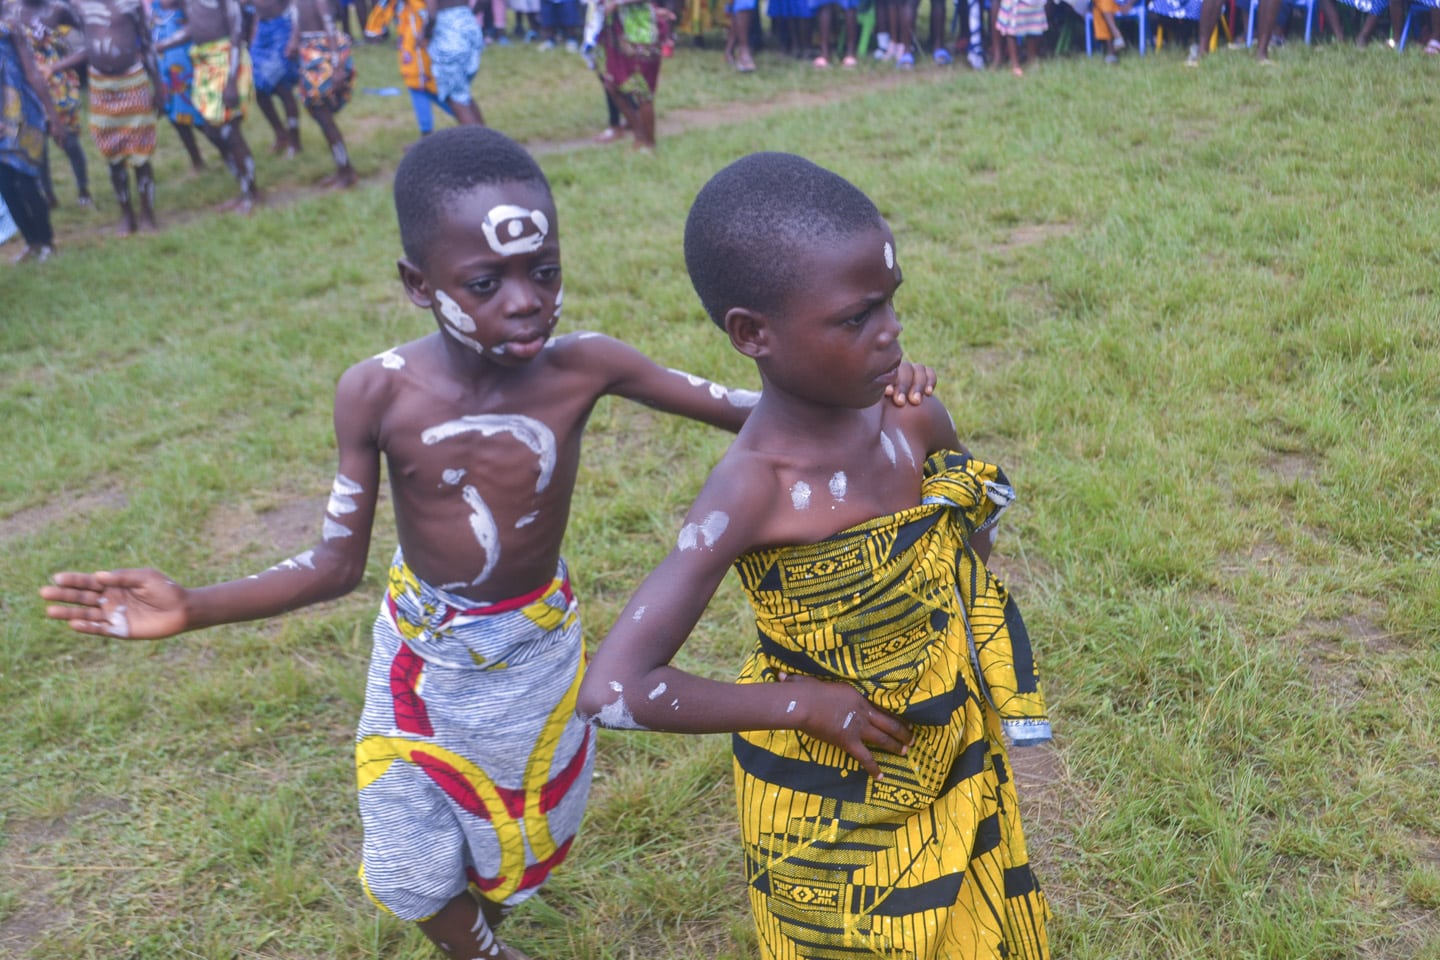 Barn underhåller på skolavslutning i Ghana.